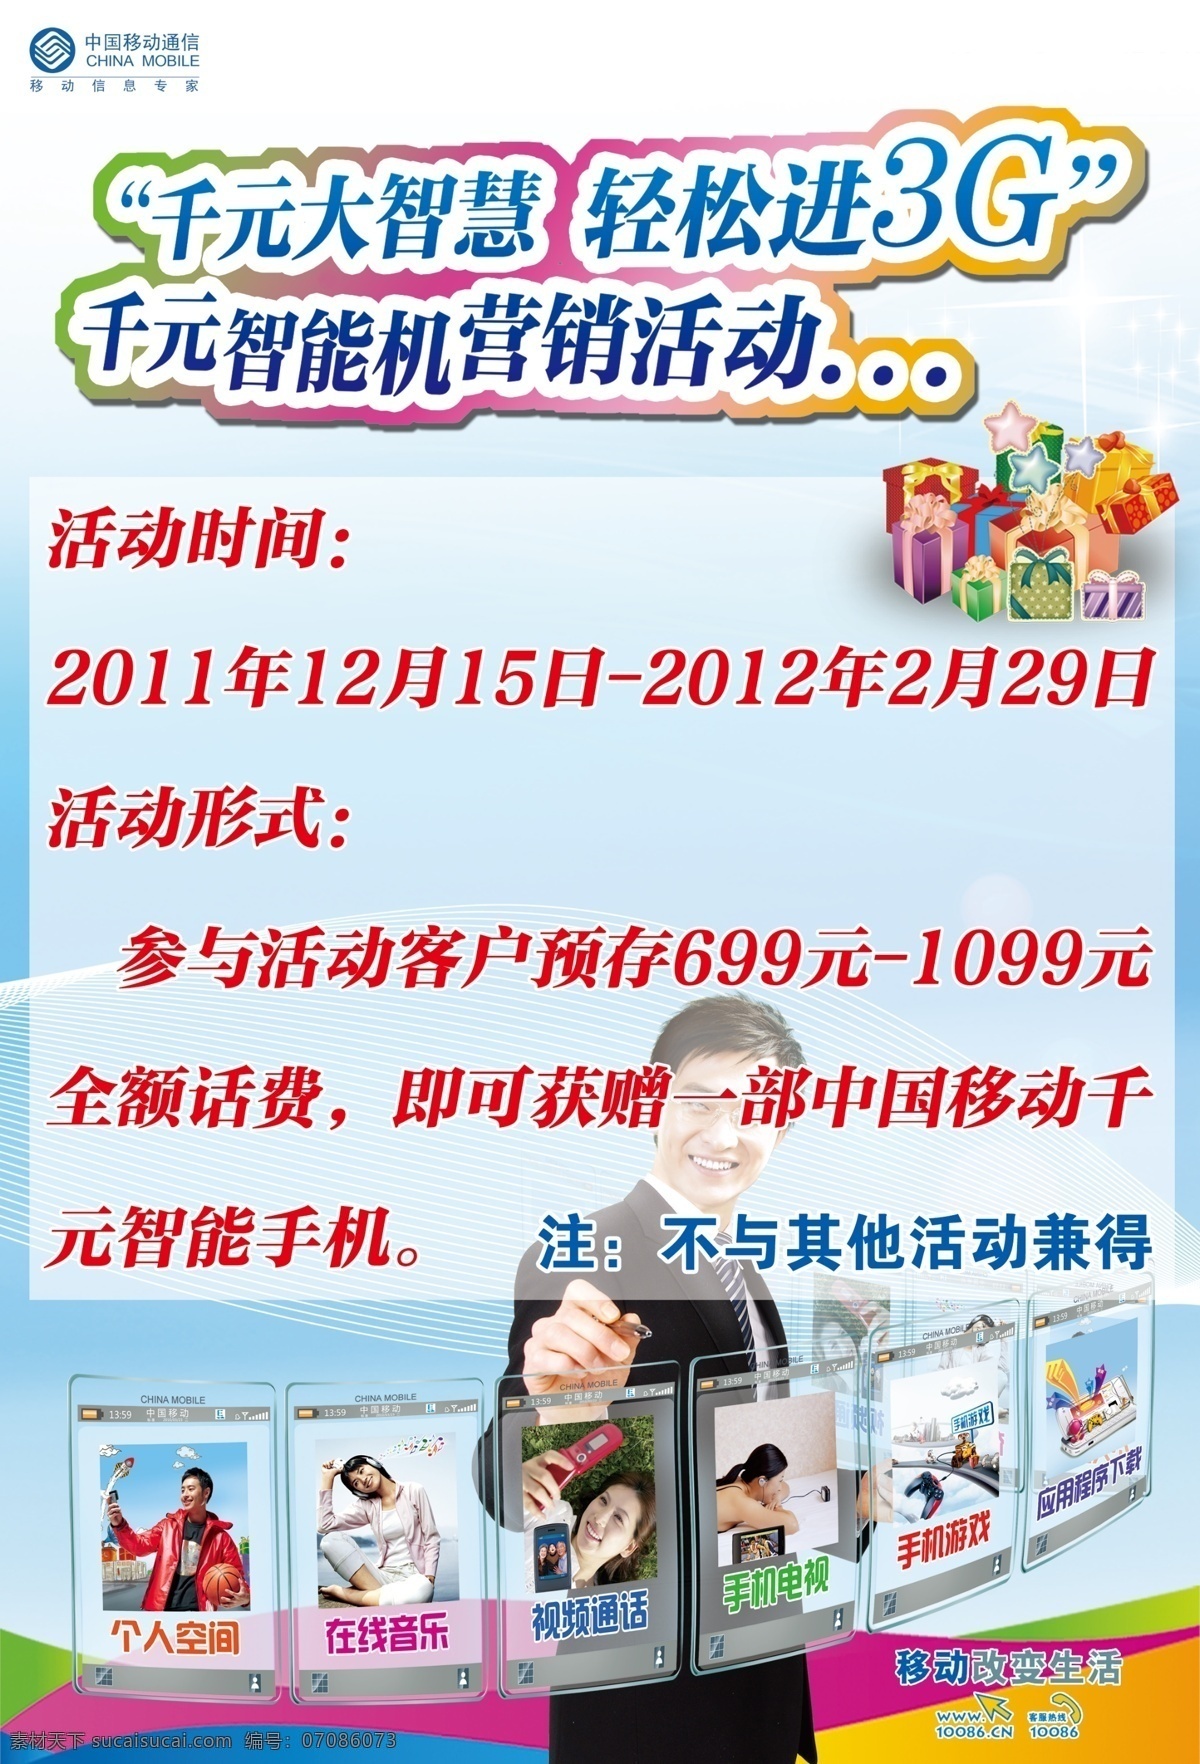 广告设计模板 礼品 男人 手机电视 源文件 中国移动 3g 手机 千 元 智能机 营销 活动 个人空间 在线音乐 其他海报设计